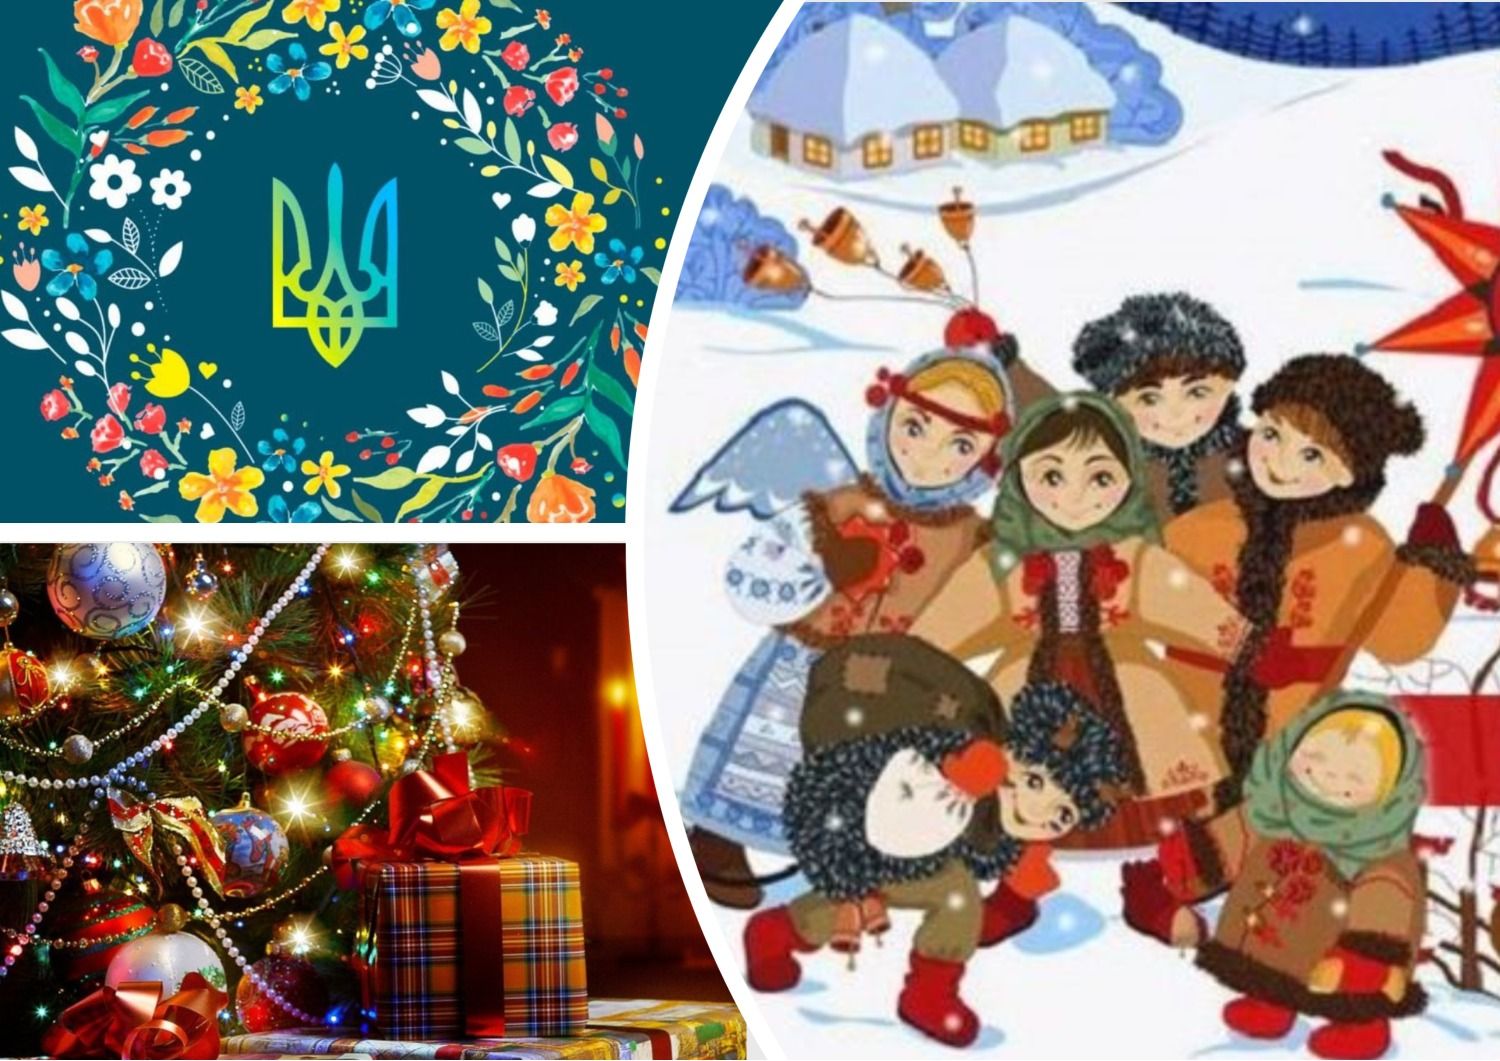 Иноязычные слова - как на украинском говорить о Новом году, Рождестве и других праздниках